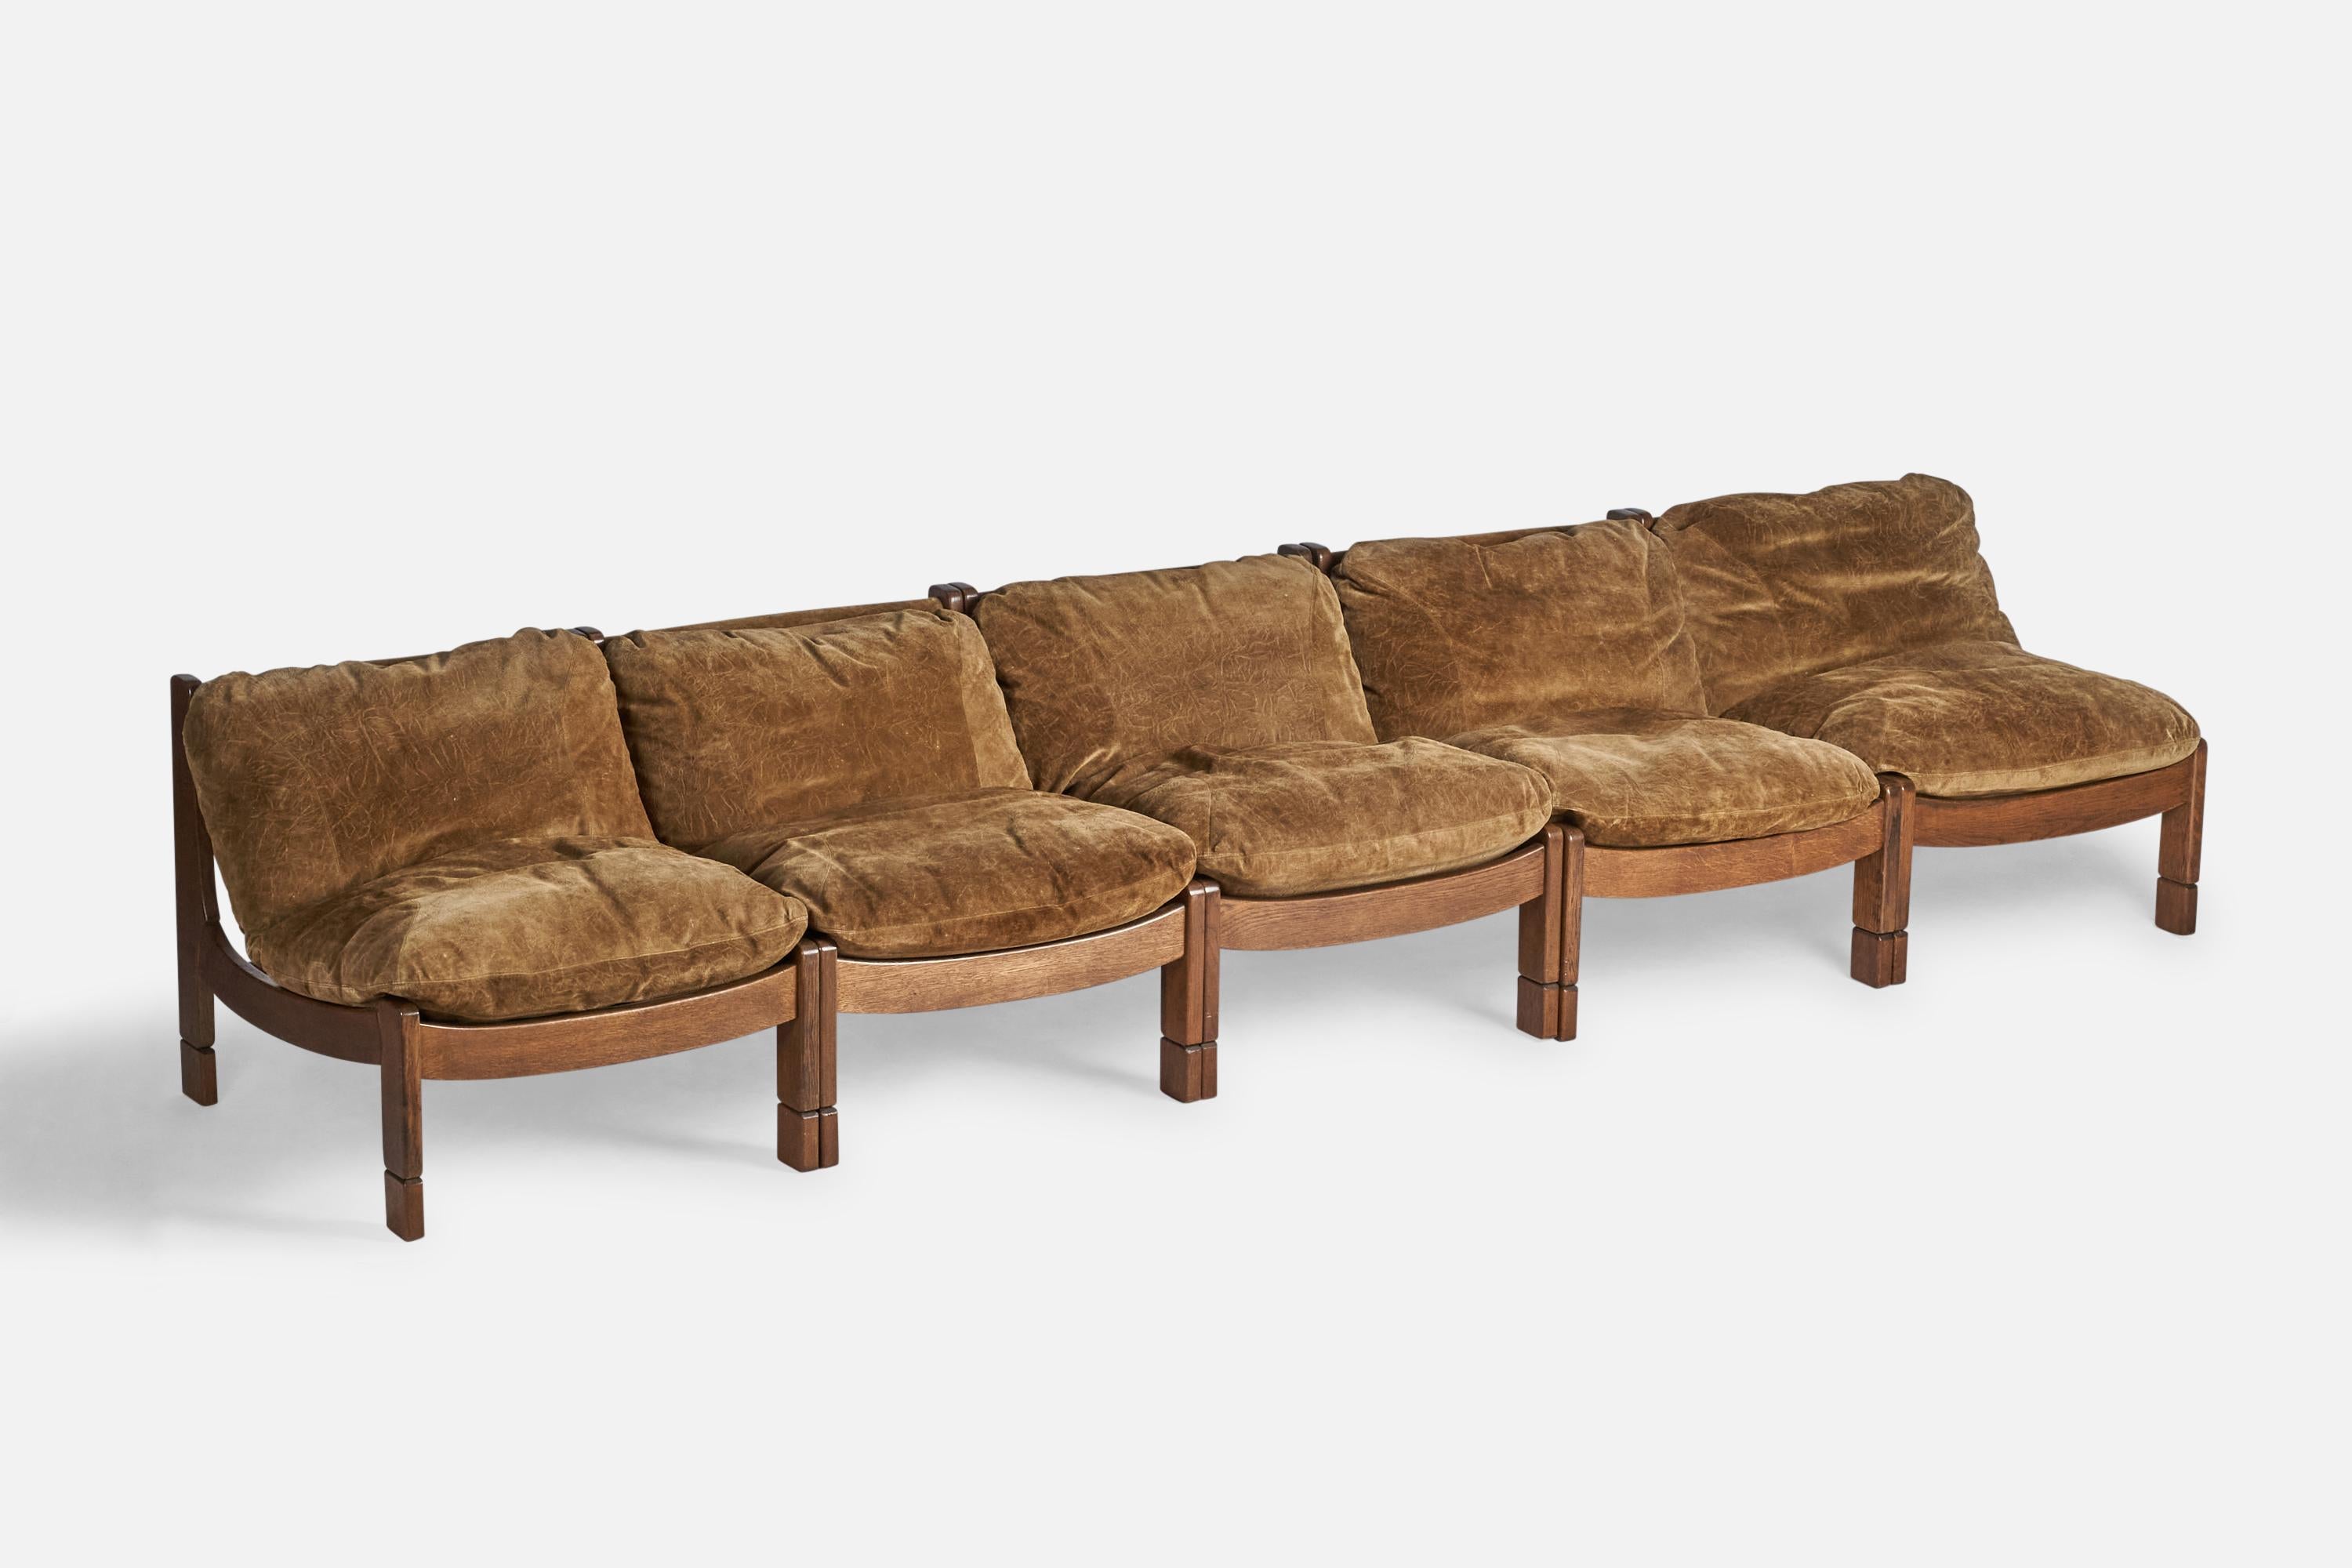 Canapé modulaire en chêne teinté foncé, daim marron et corde ou 5 chaises à pantoufles avec ottoman, conçu et produit en Espagne, c. 1950.